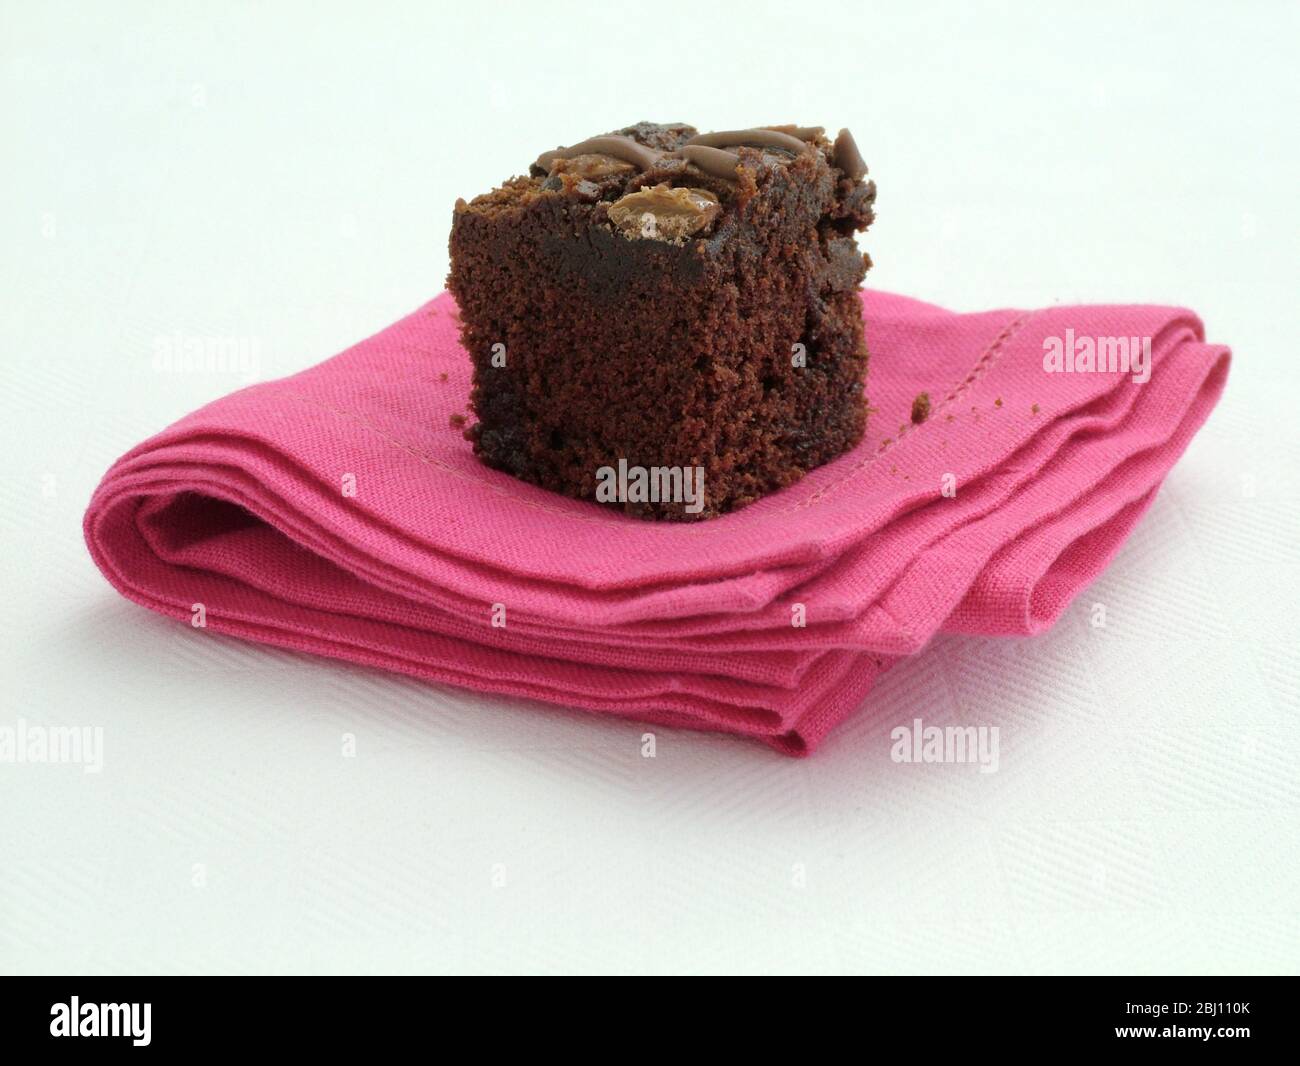 Schokolade Brownie auf rosa Leinen Serviette - Stockfoto